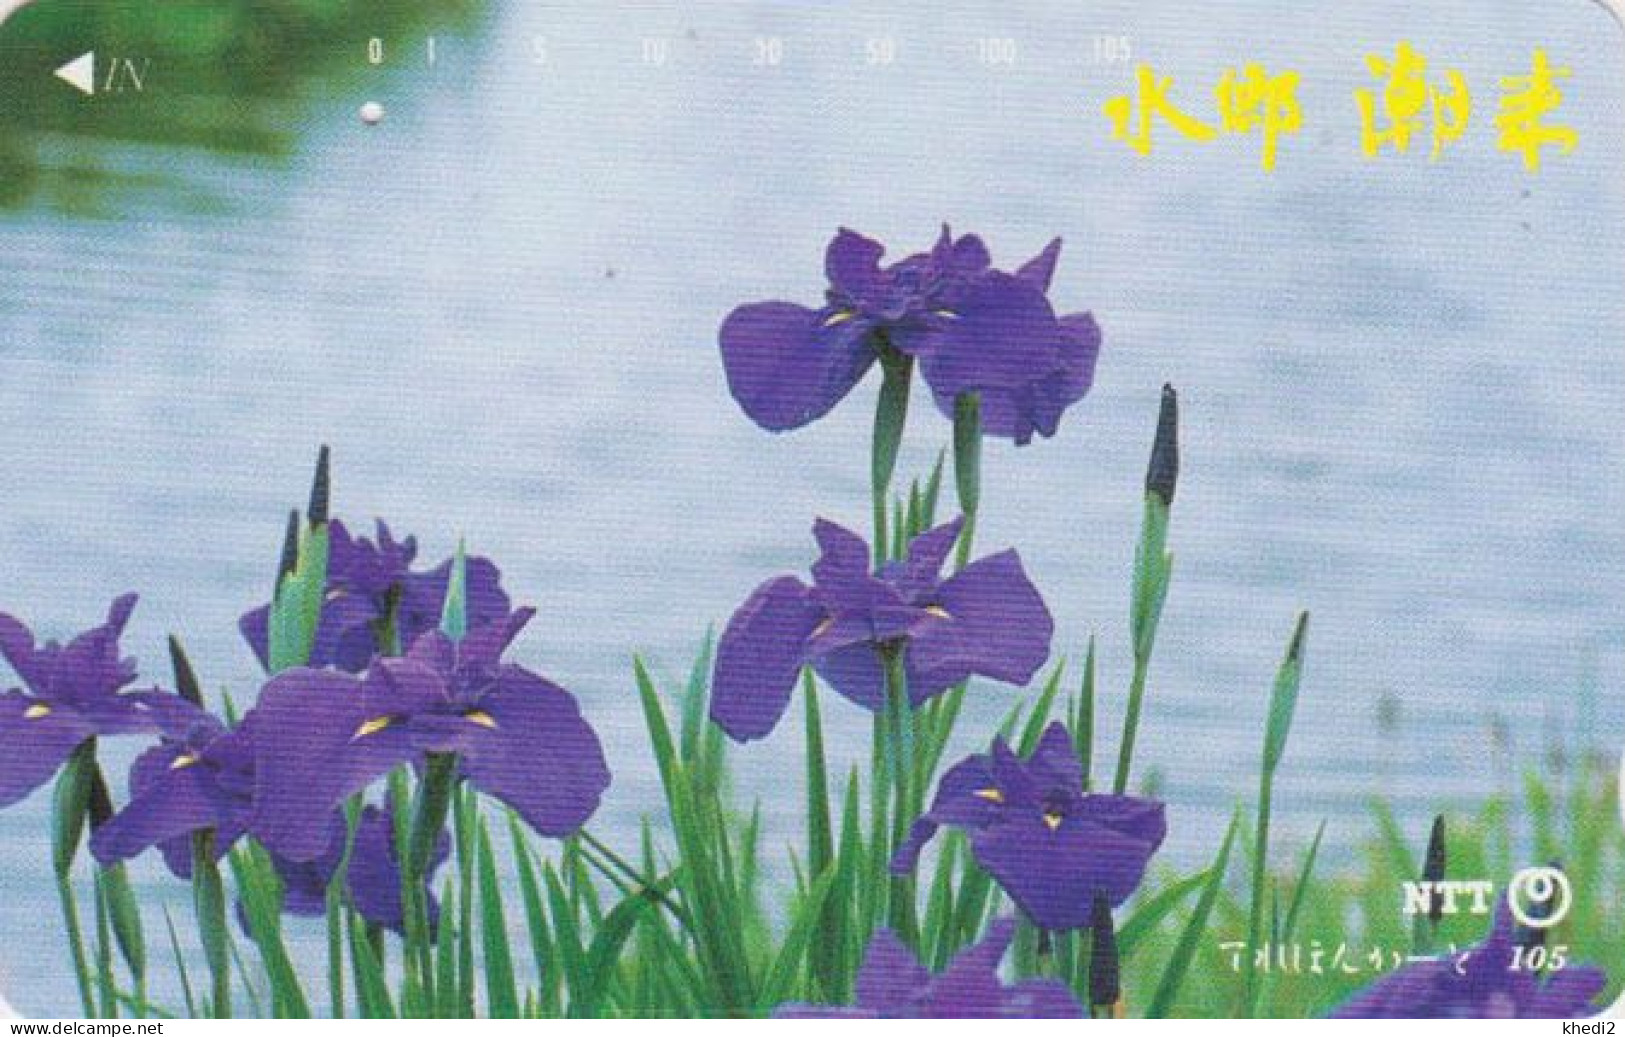 Télécarte JAPON / NTT 251-003 B ** 1 PUNCH ** - FLEUR IRIS D'EAU - FLOWER JAPAN Phonecard - Blumen